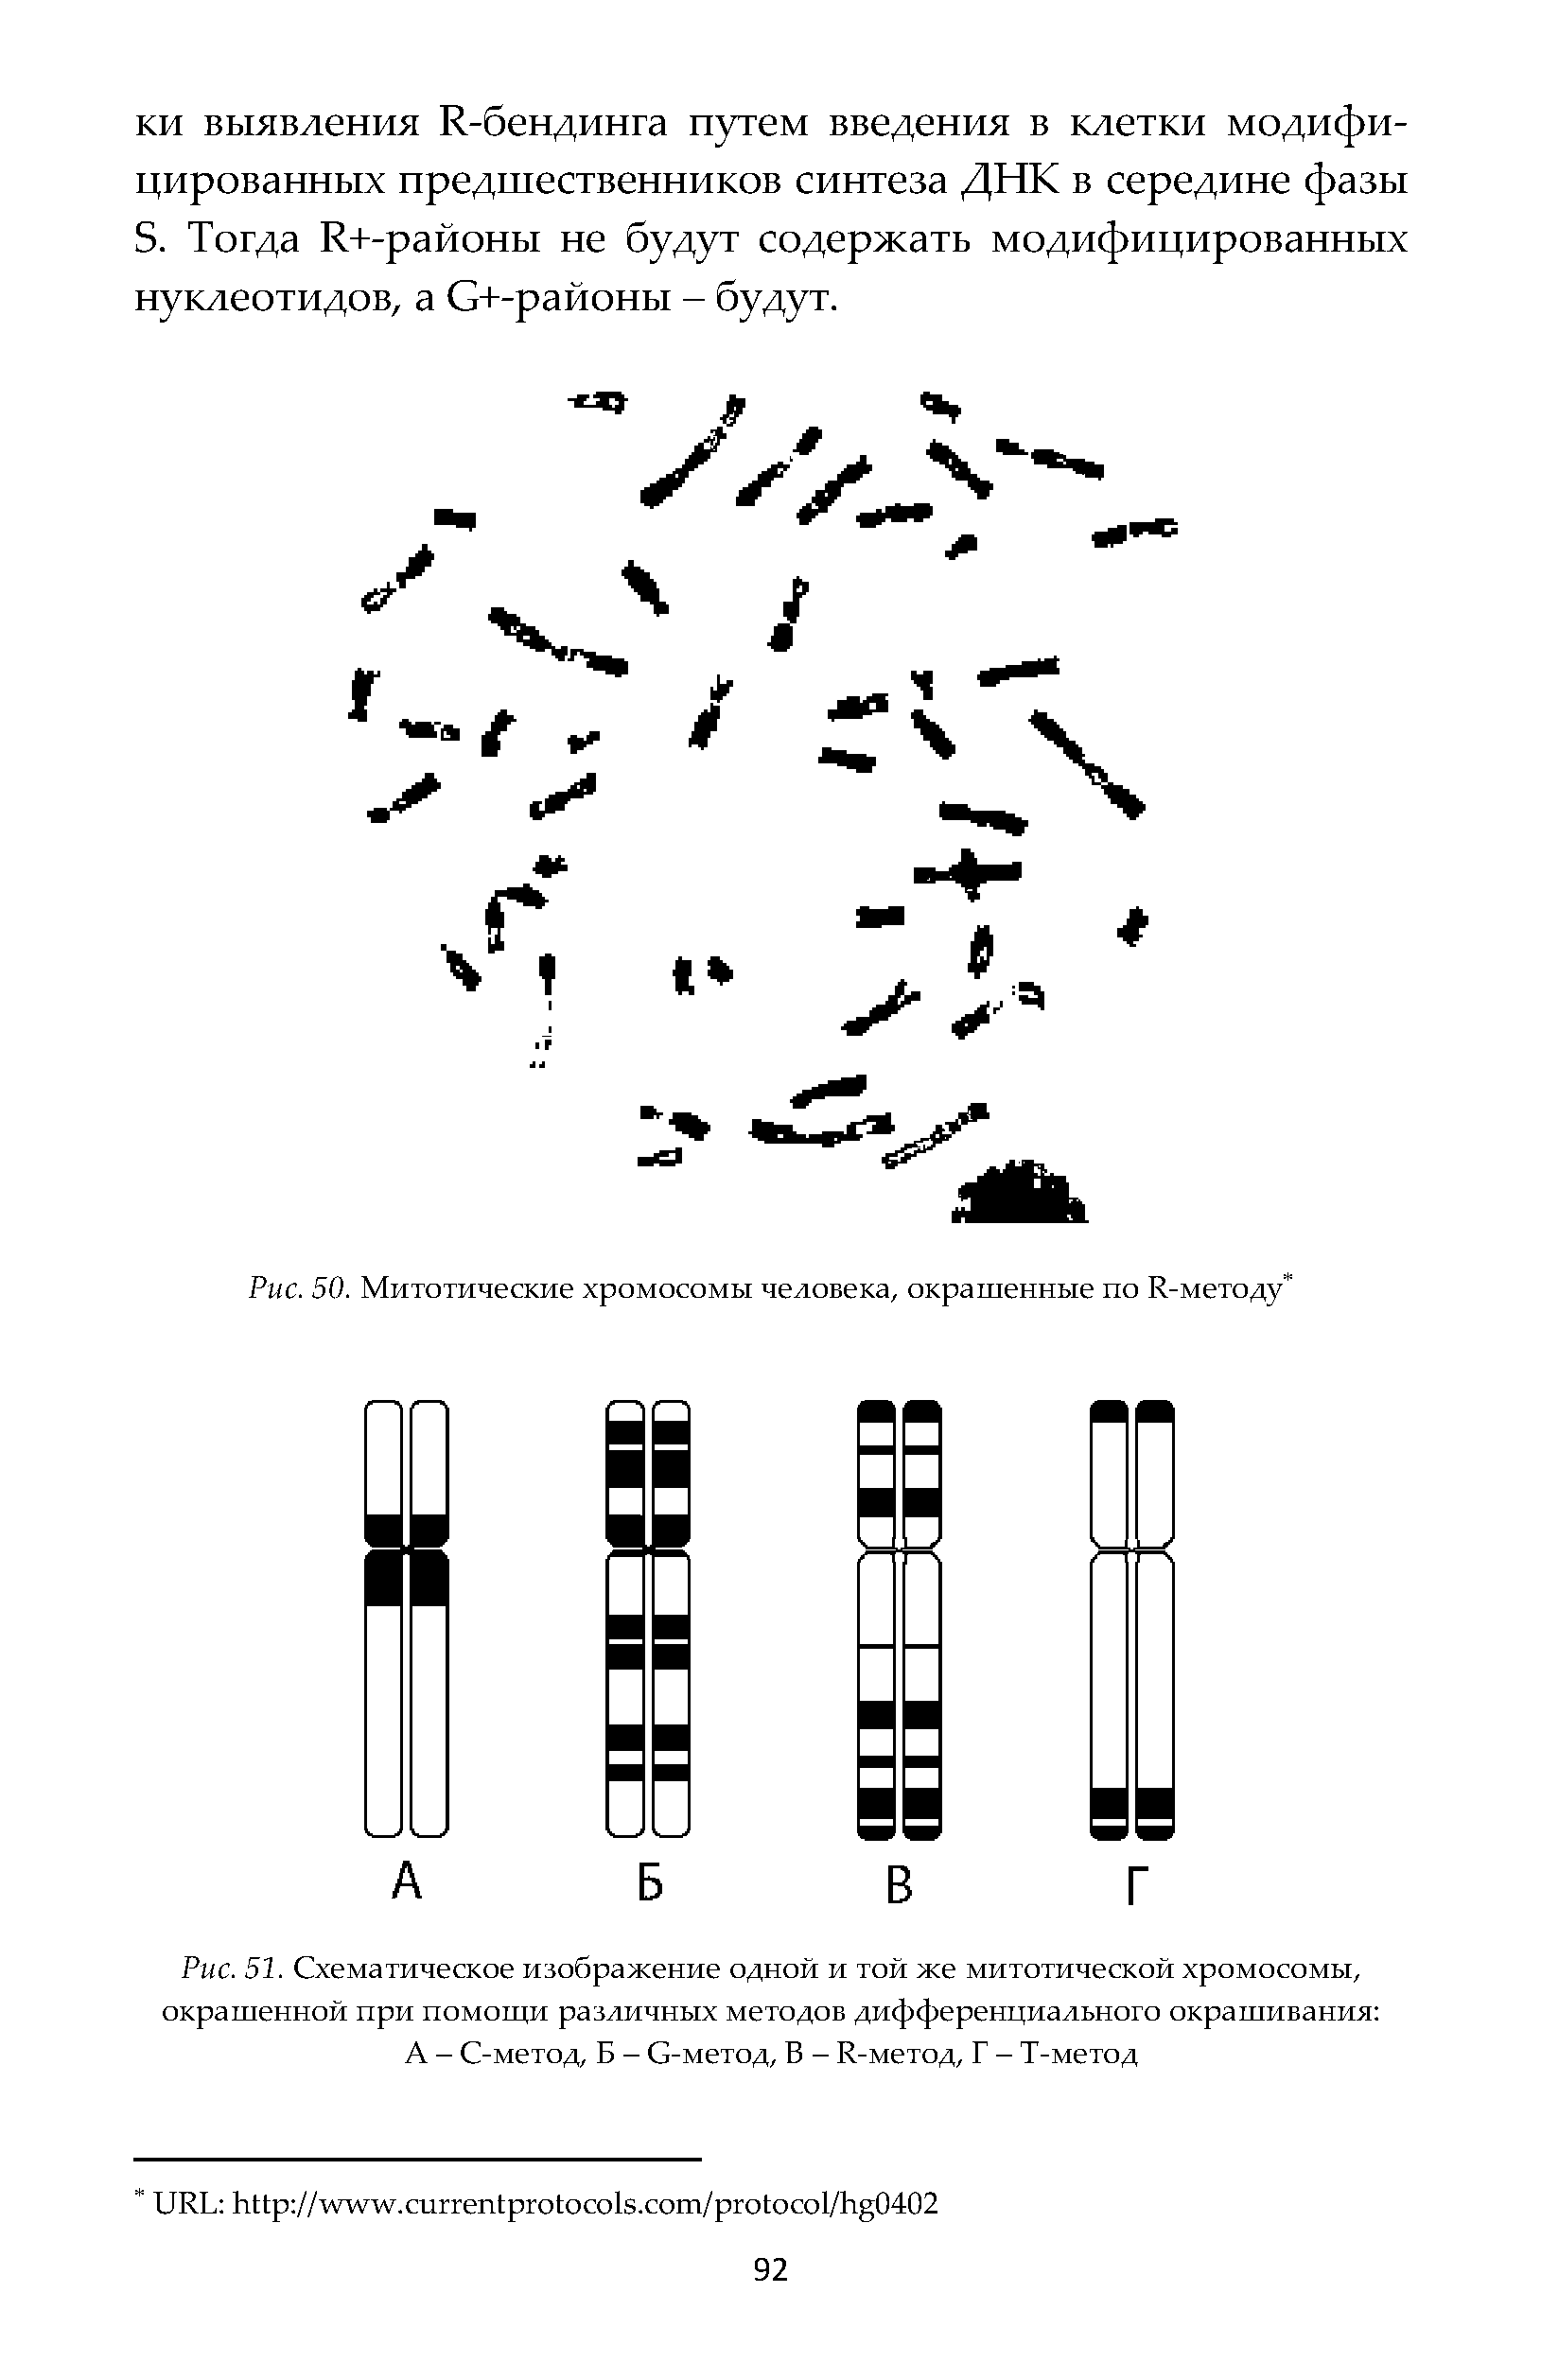 Рис. 51. Схематическое изображение одной и той же митотической хромосомы, окрашенной при помощи различных методов дифференциального окрашивания А - С-метод, Б - С-метод, Б - И-метод, Г - Т-метод...